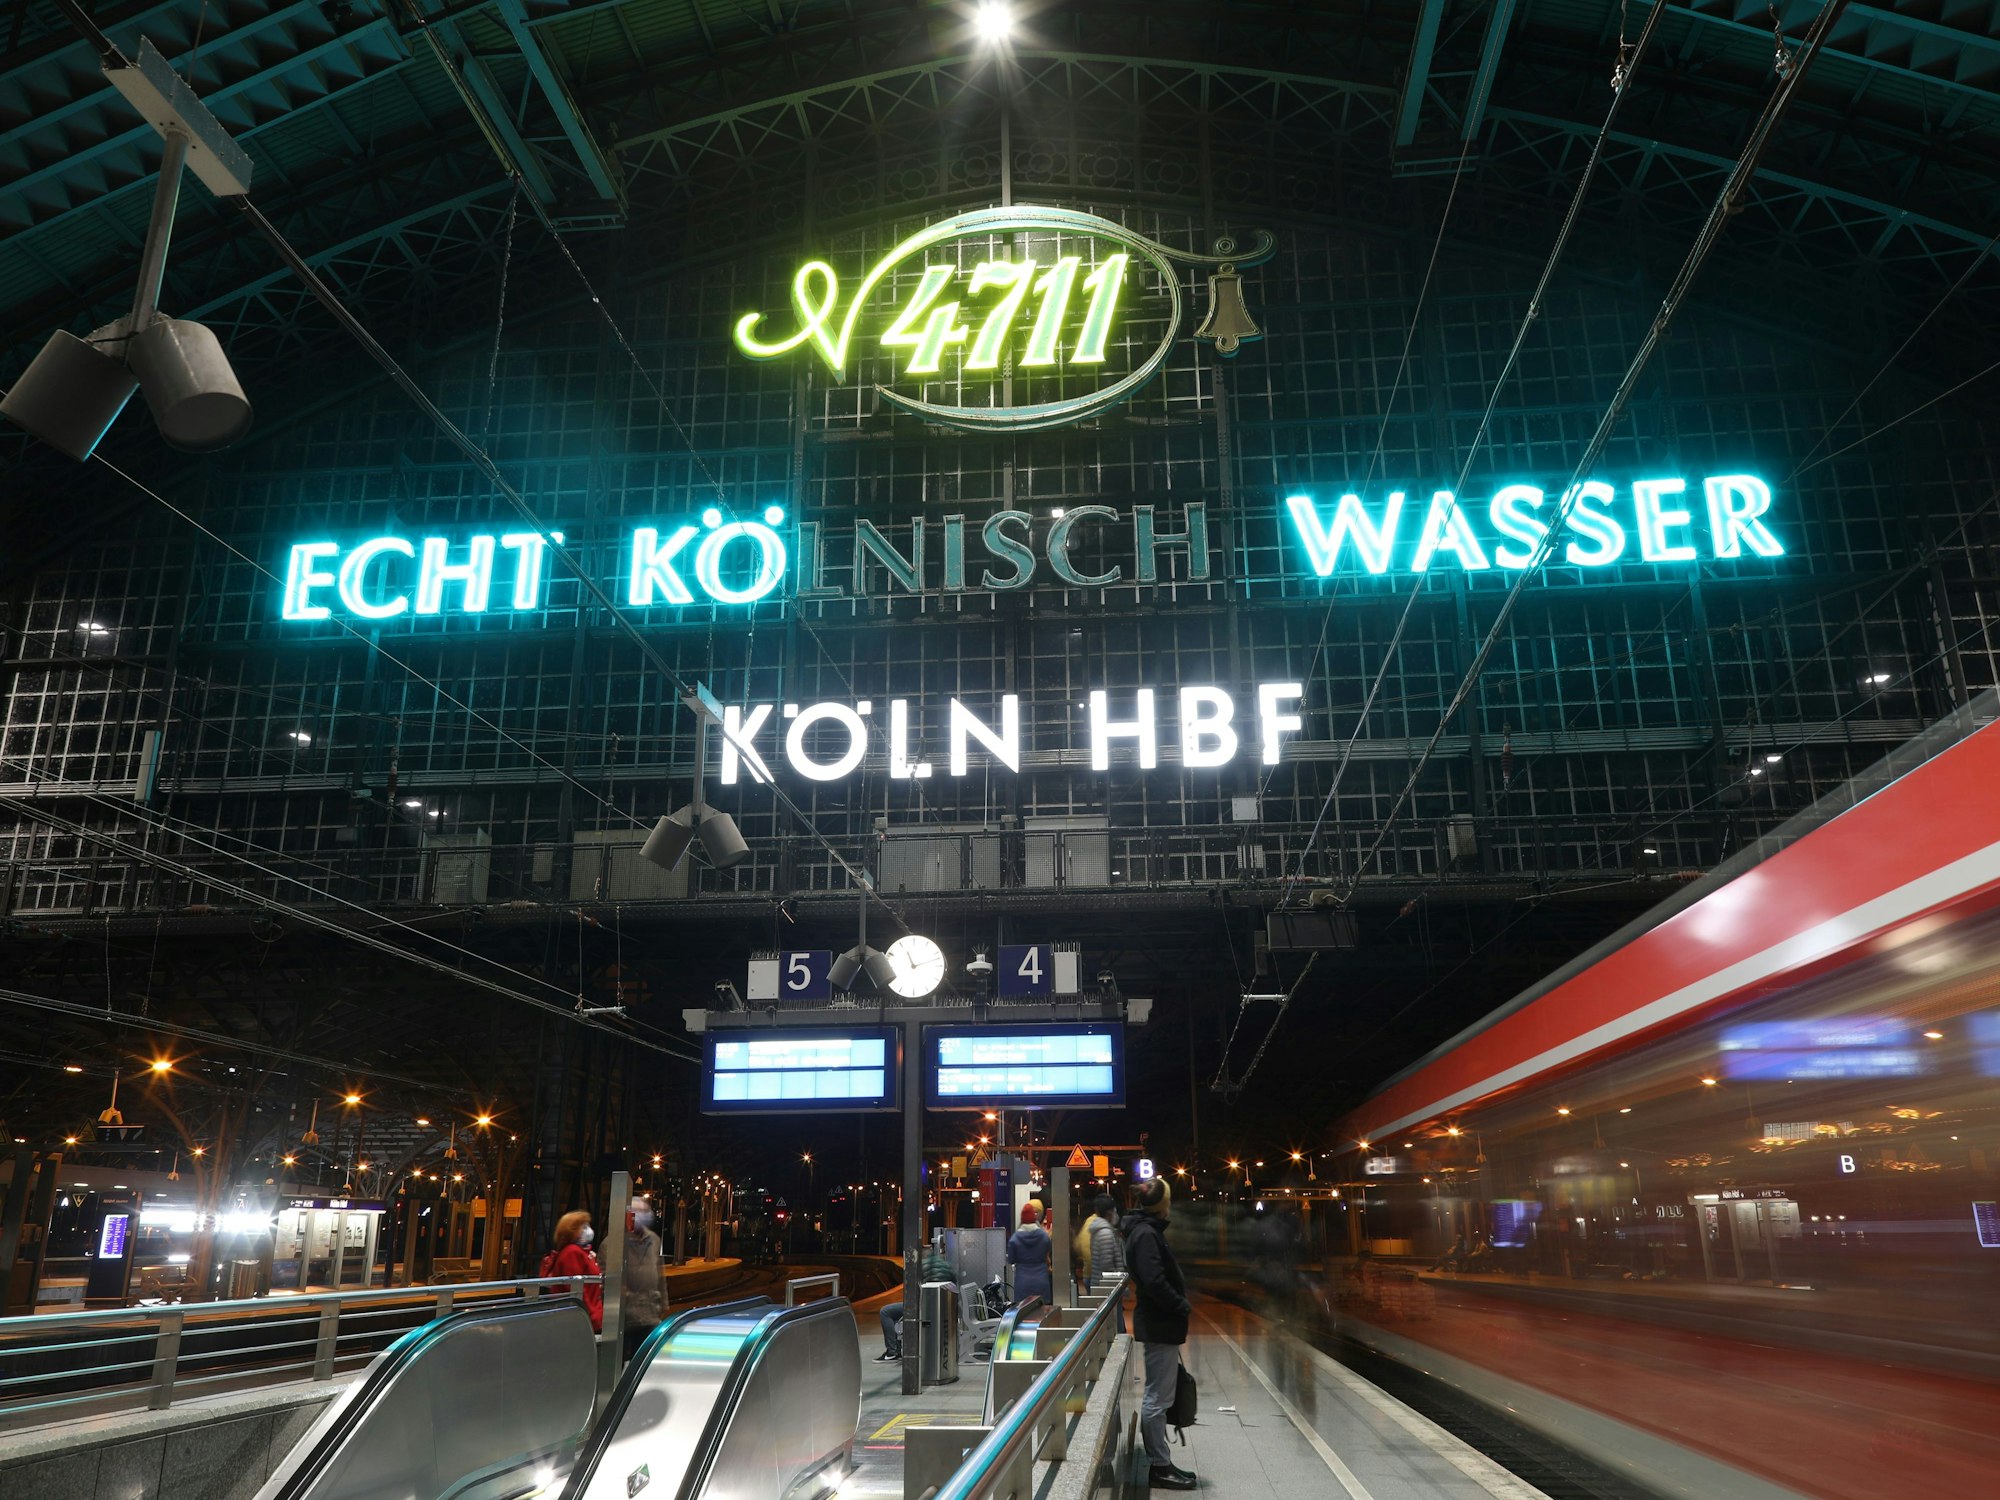 Schriftzug "Echt Kölnisch Wasser" in der Gleishalle des Kölner Hbf